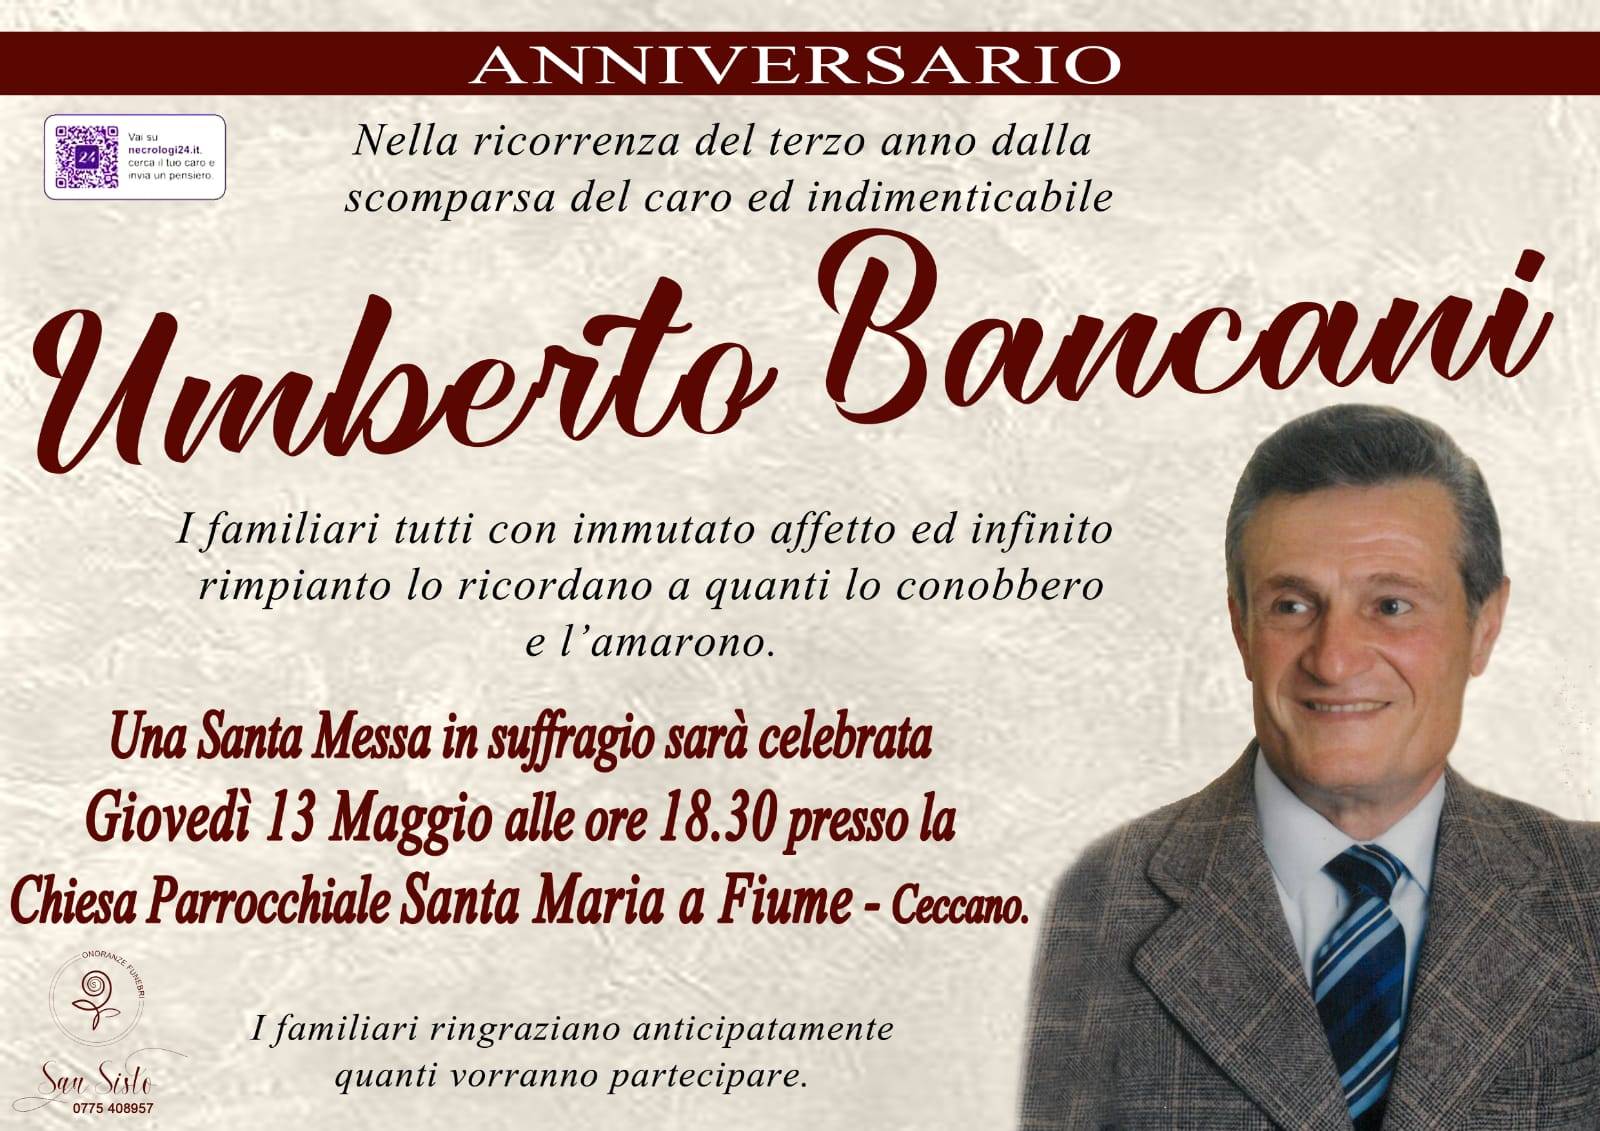 Umberto Bancani